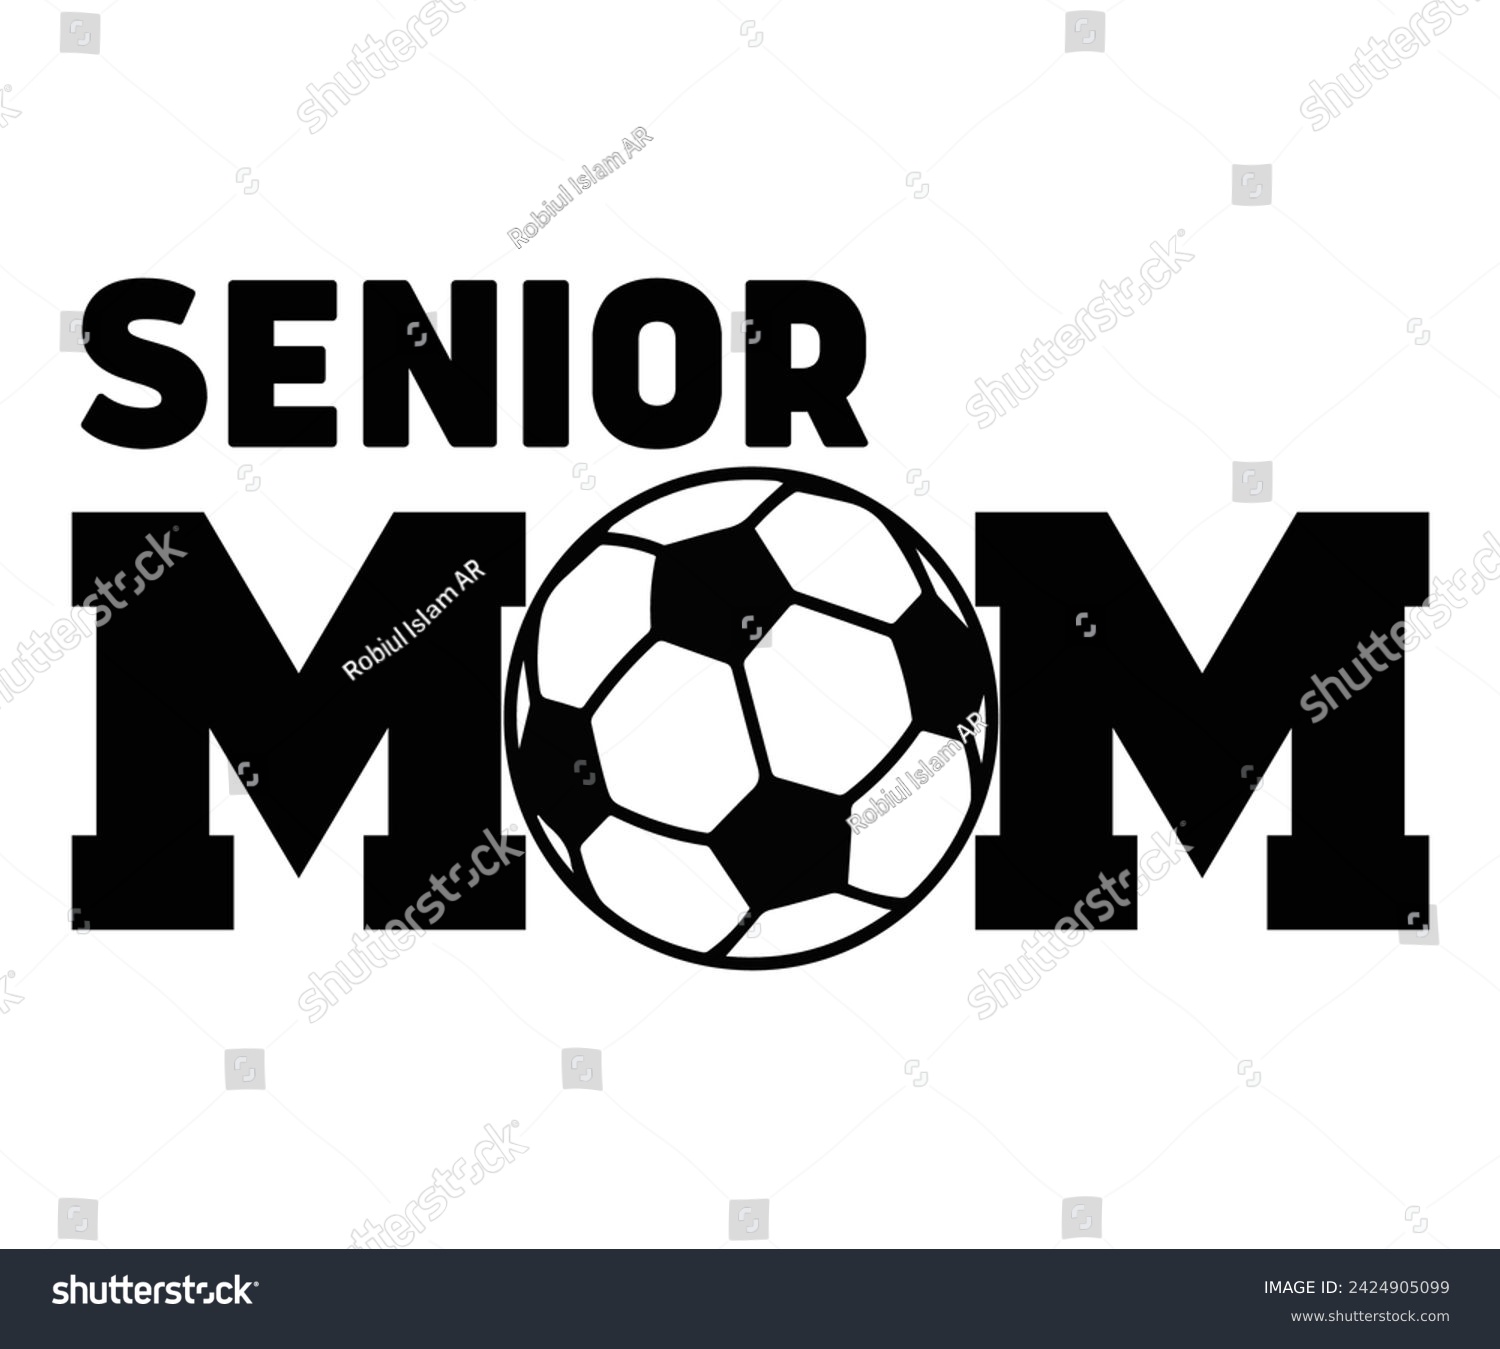 SVG of Senior Mom Svg,Soccer Day, Soccer Player Shirt, Gift For Soccer, r Football, Sport Design Svg,Cut File,Soccer Ball, Soccer t-Shirt Design, European Football,  svg